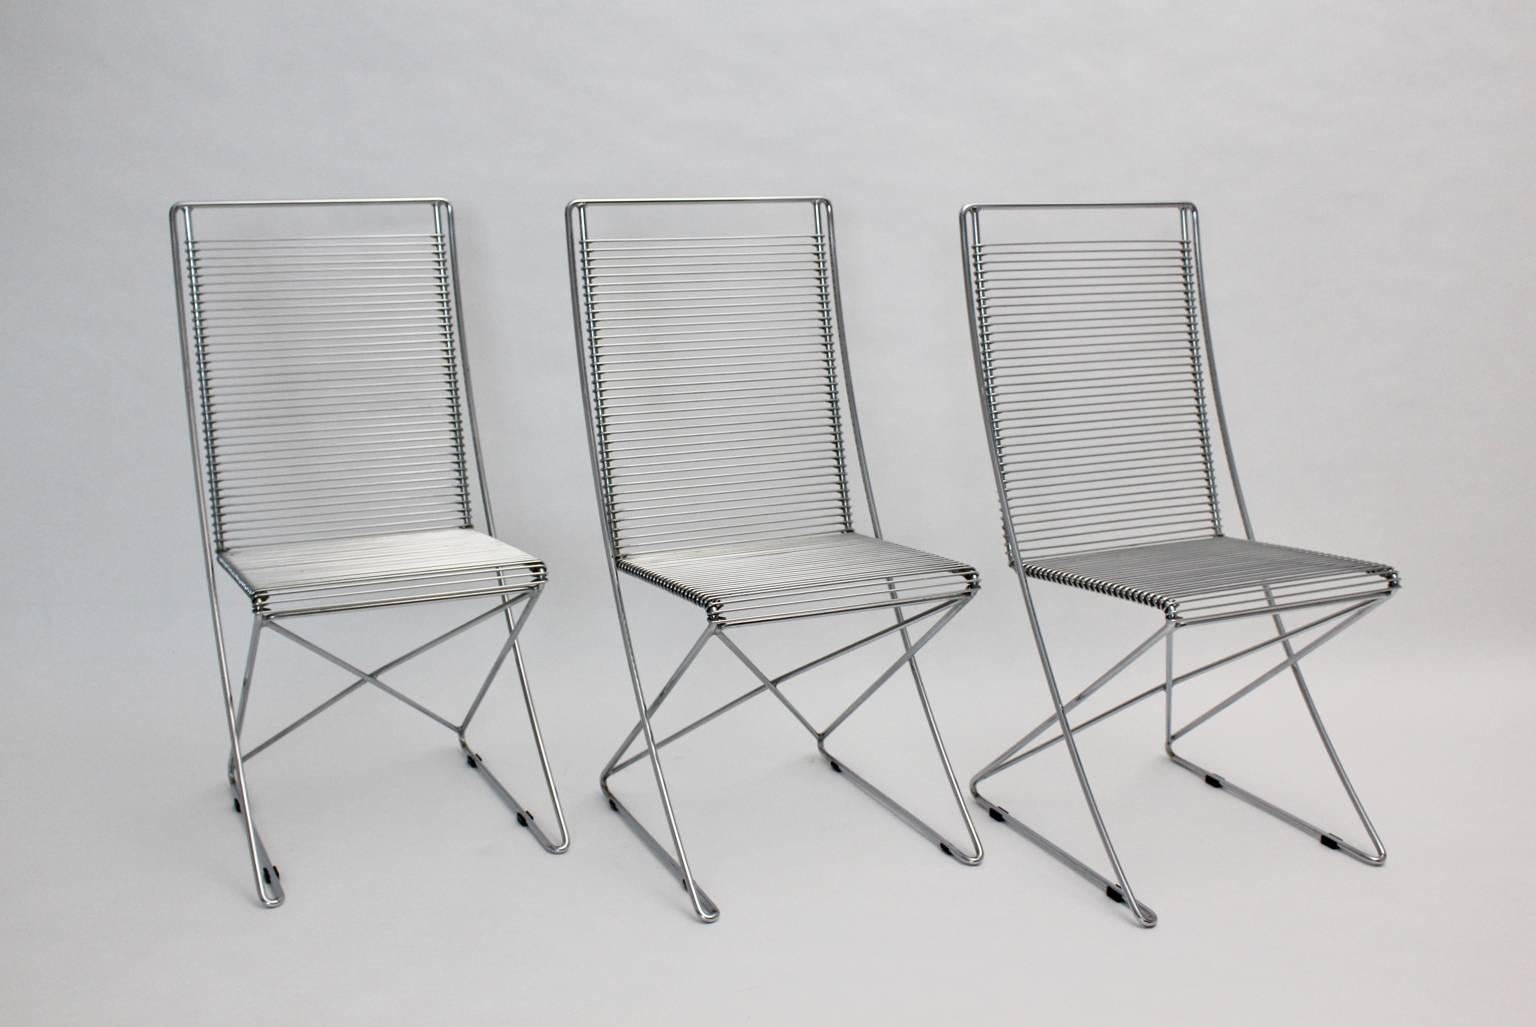 Postmoderne Vintage-Stühle, 3er-Set, aus verchromtem Stahldraht in skulpturaler Form, Modell Kreuzschwinger.
Die Esszimmerstühle wurden von Till Behrens 1983 Deutschland entworfen und von Schlubach, Grieben Brandenburg Deutschland hergestellt.
alle